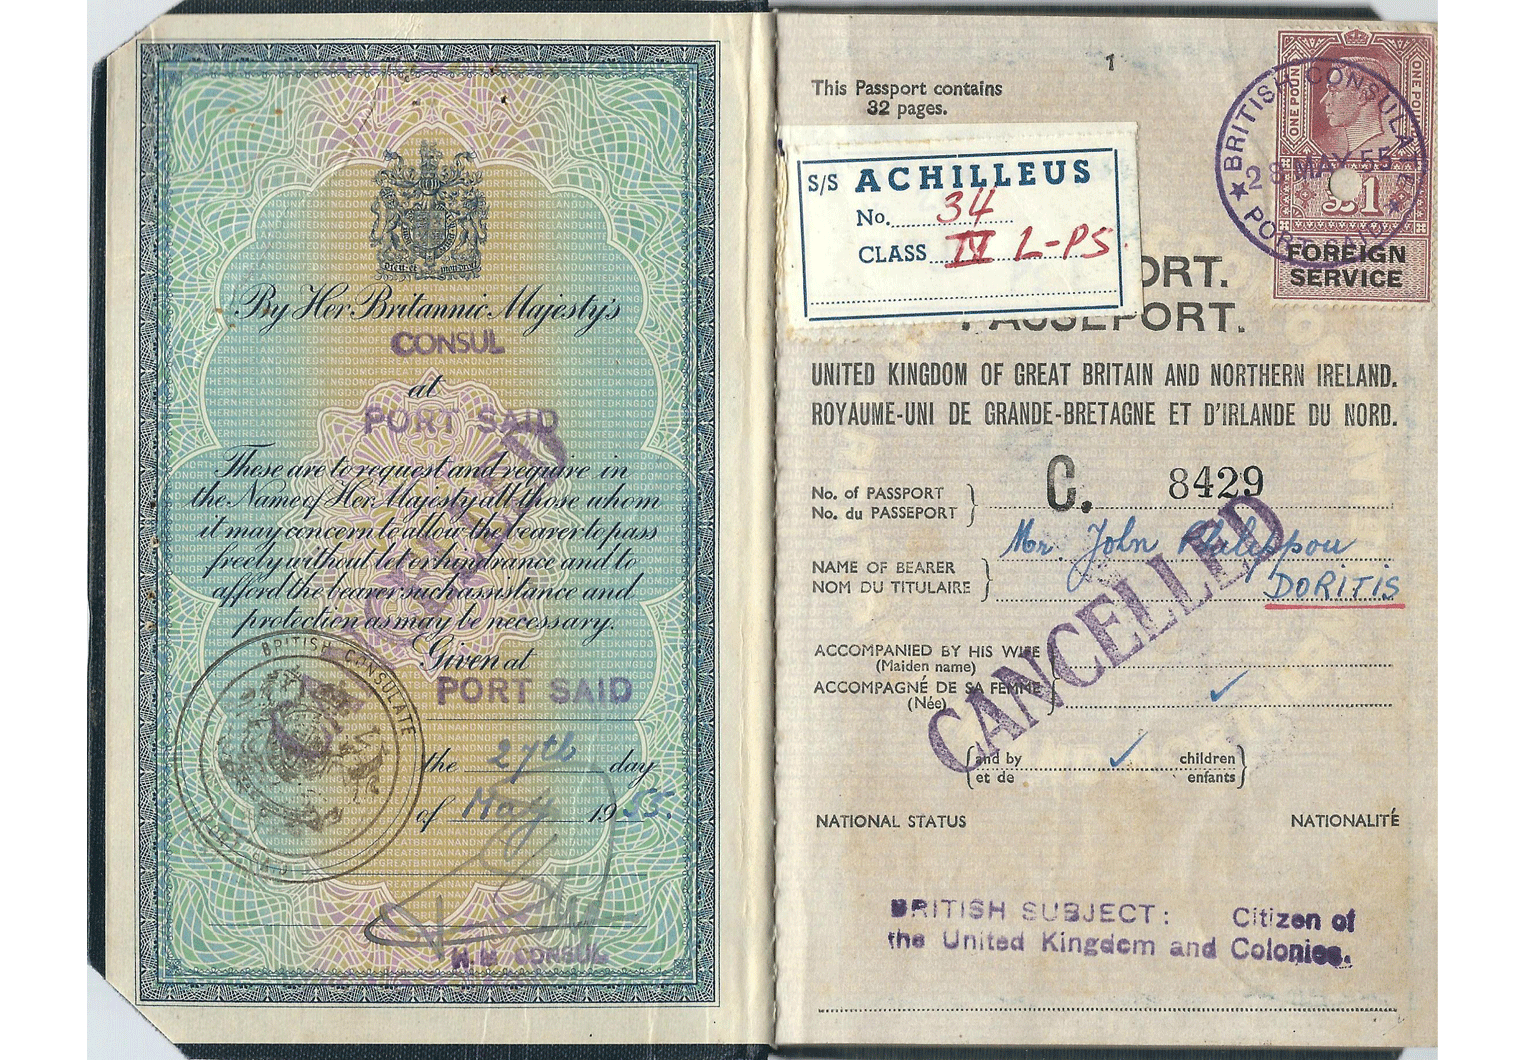 Suez Crisis passport.